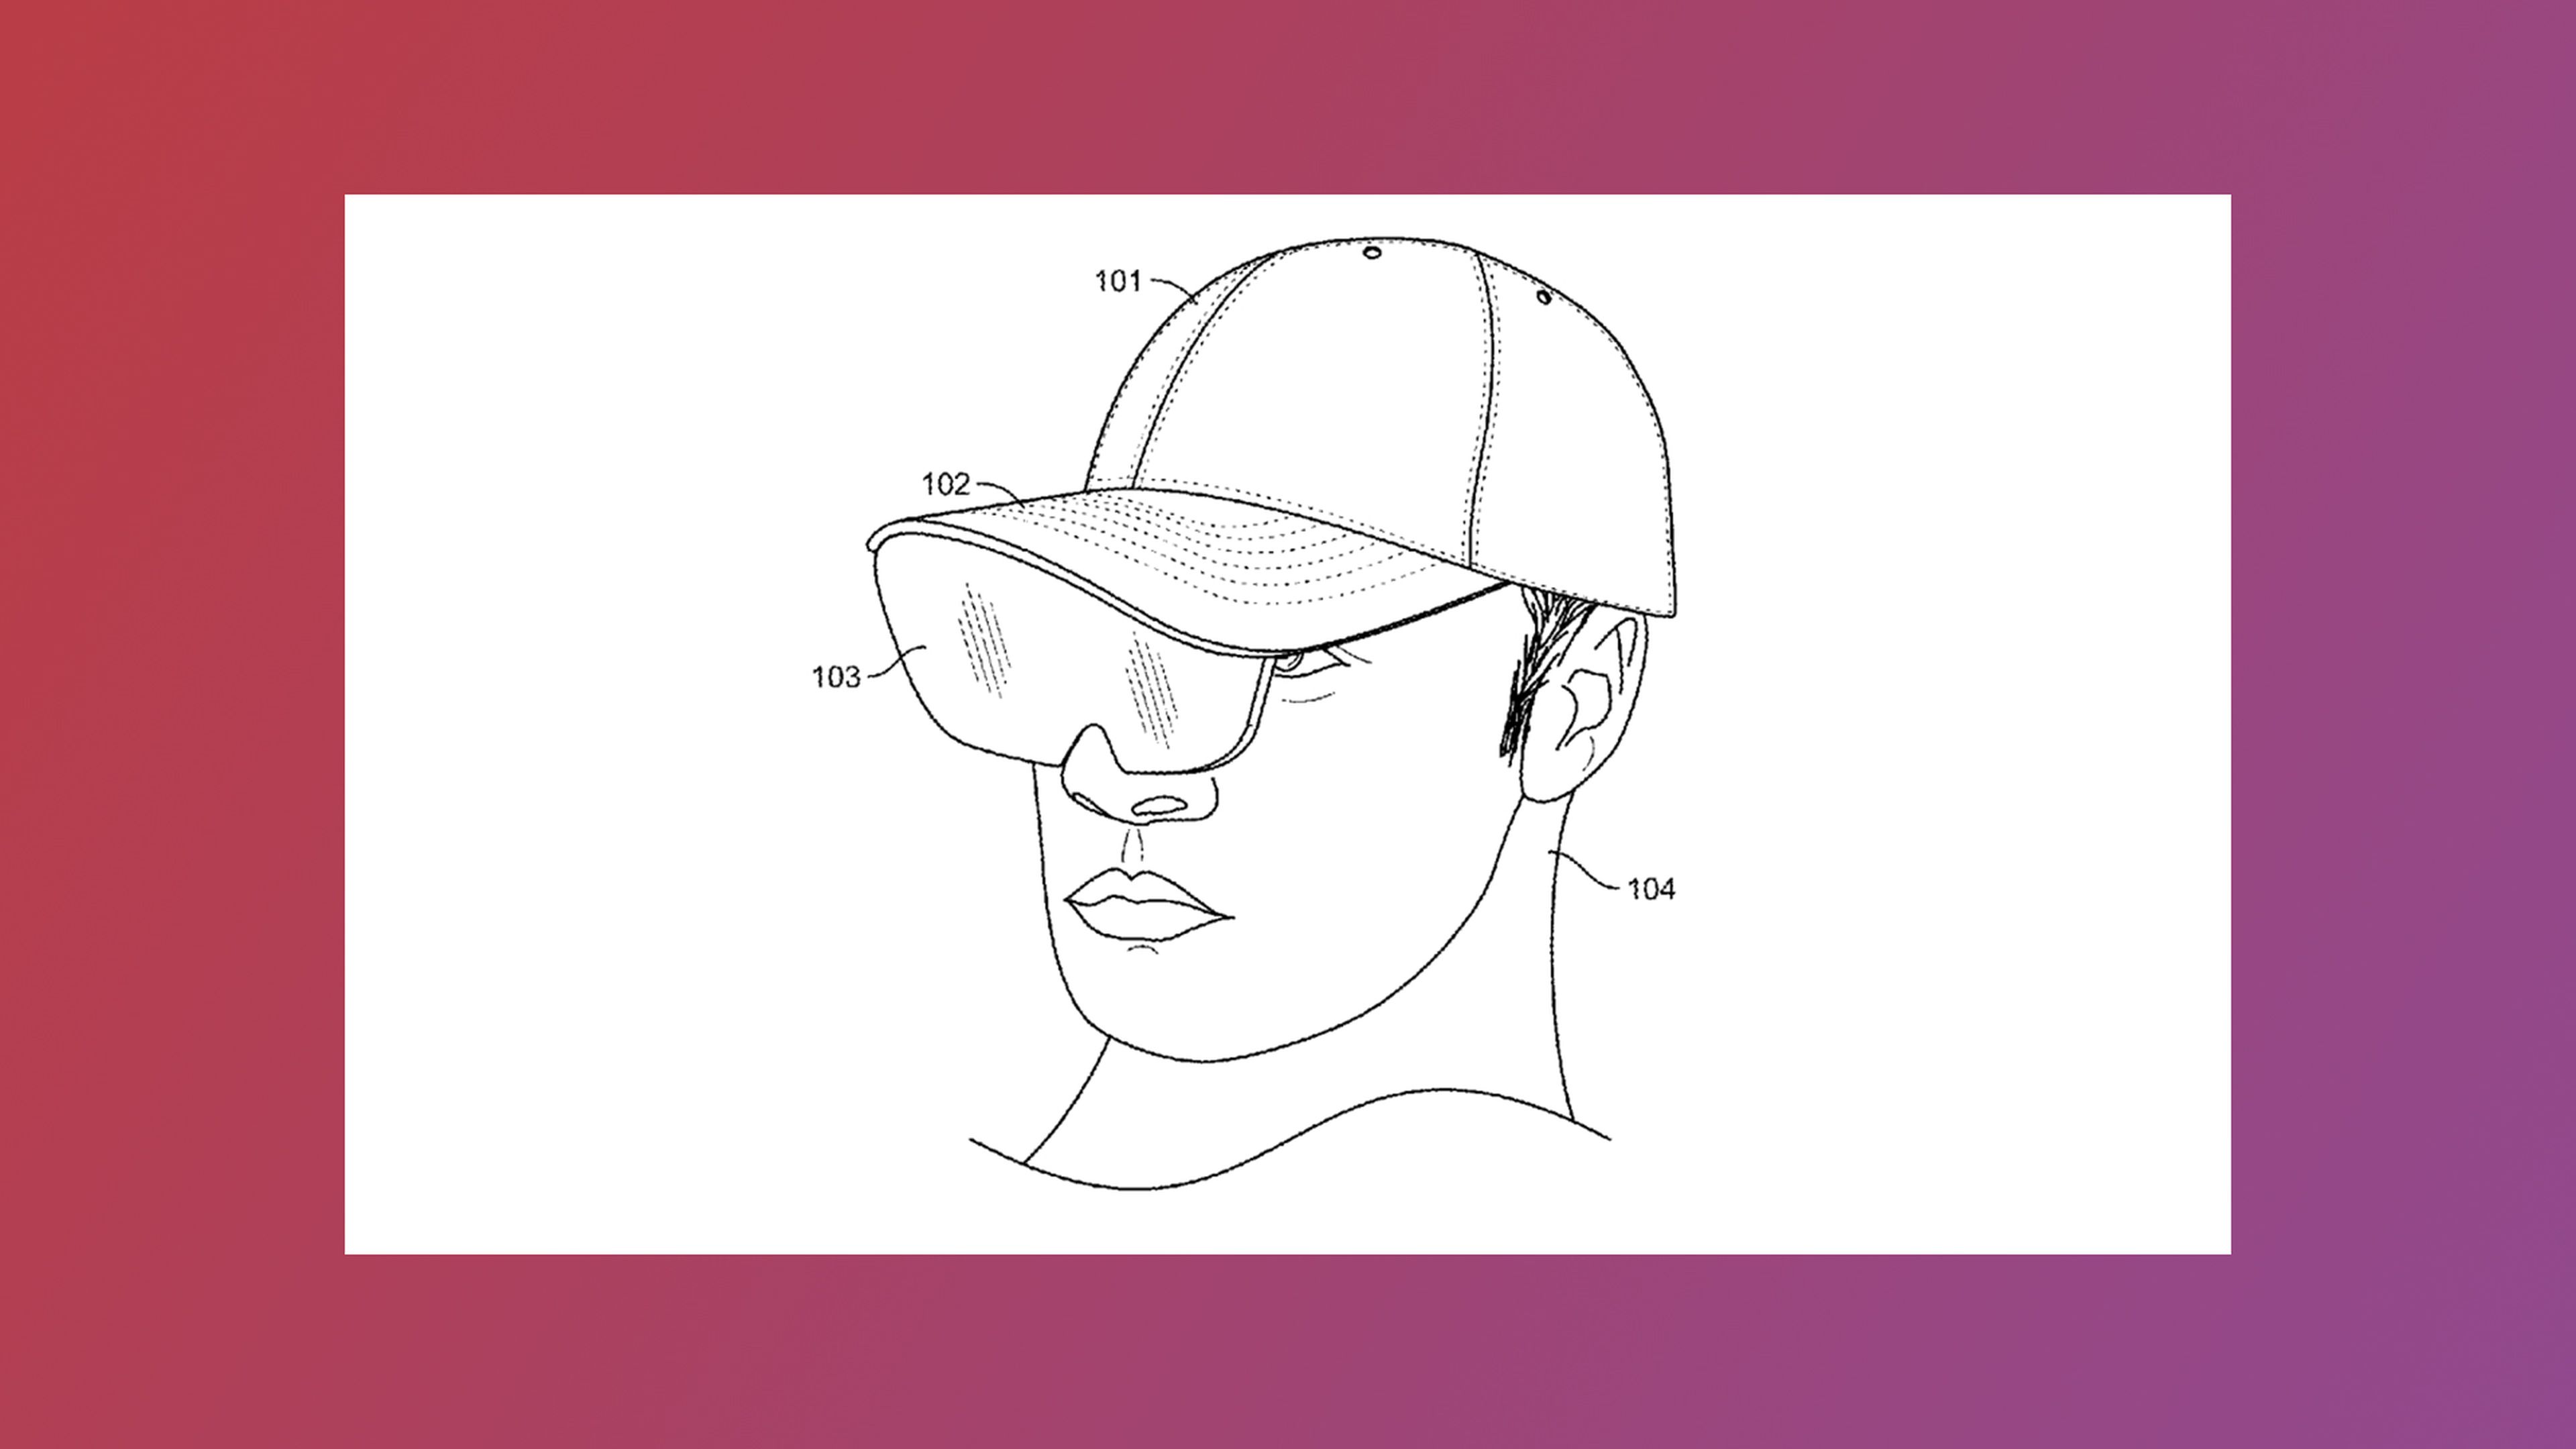 Estas son las gafas de realidad aumentada de Facebook que nunca se hicieron realidad